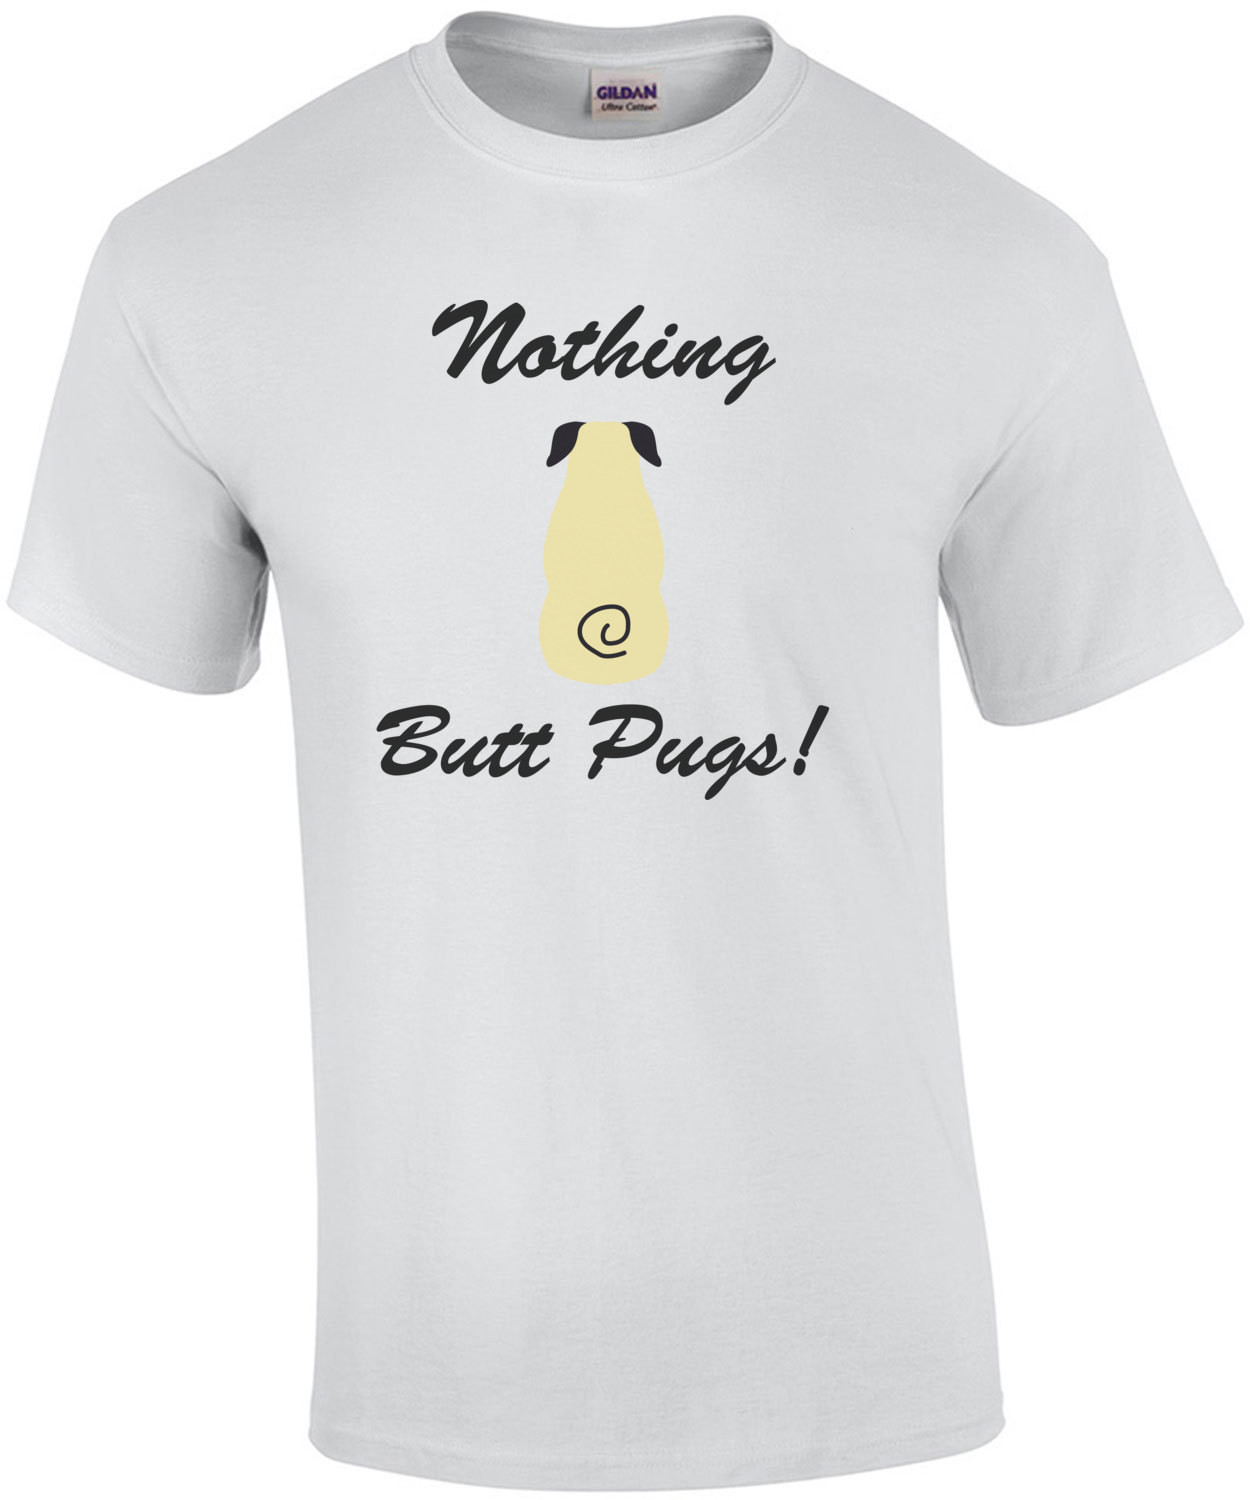 Nothing butt pugs! - Pug T-Shirt